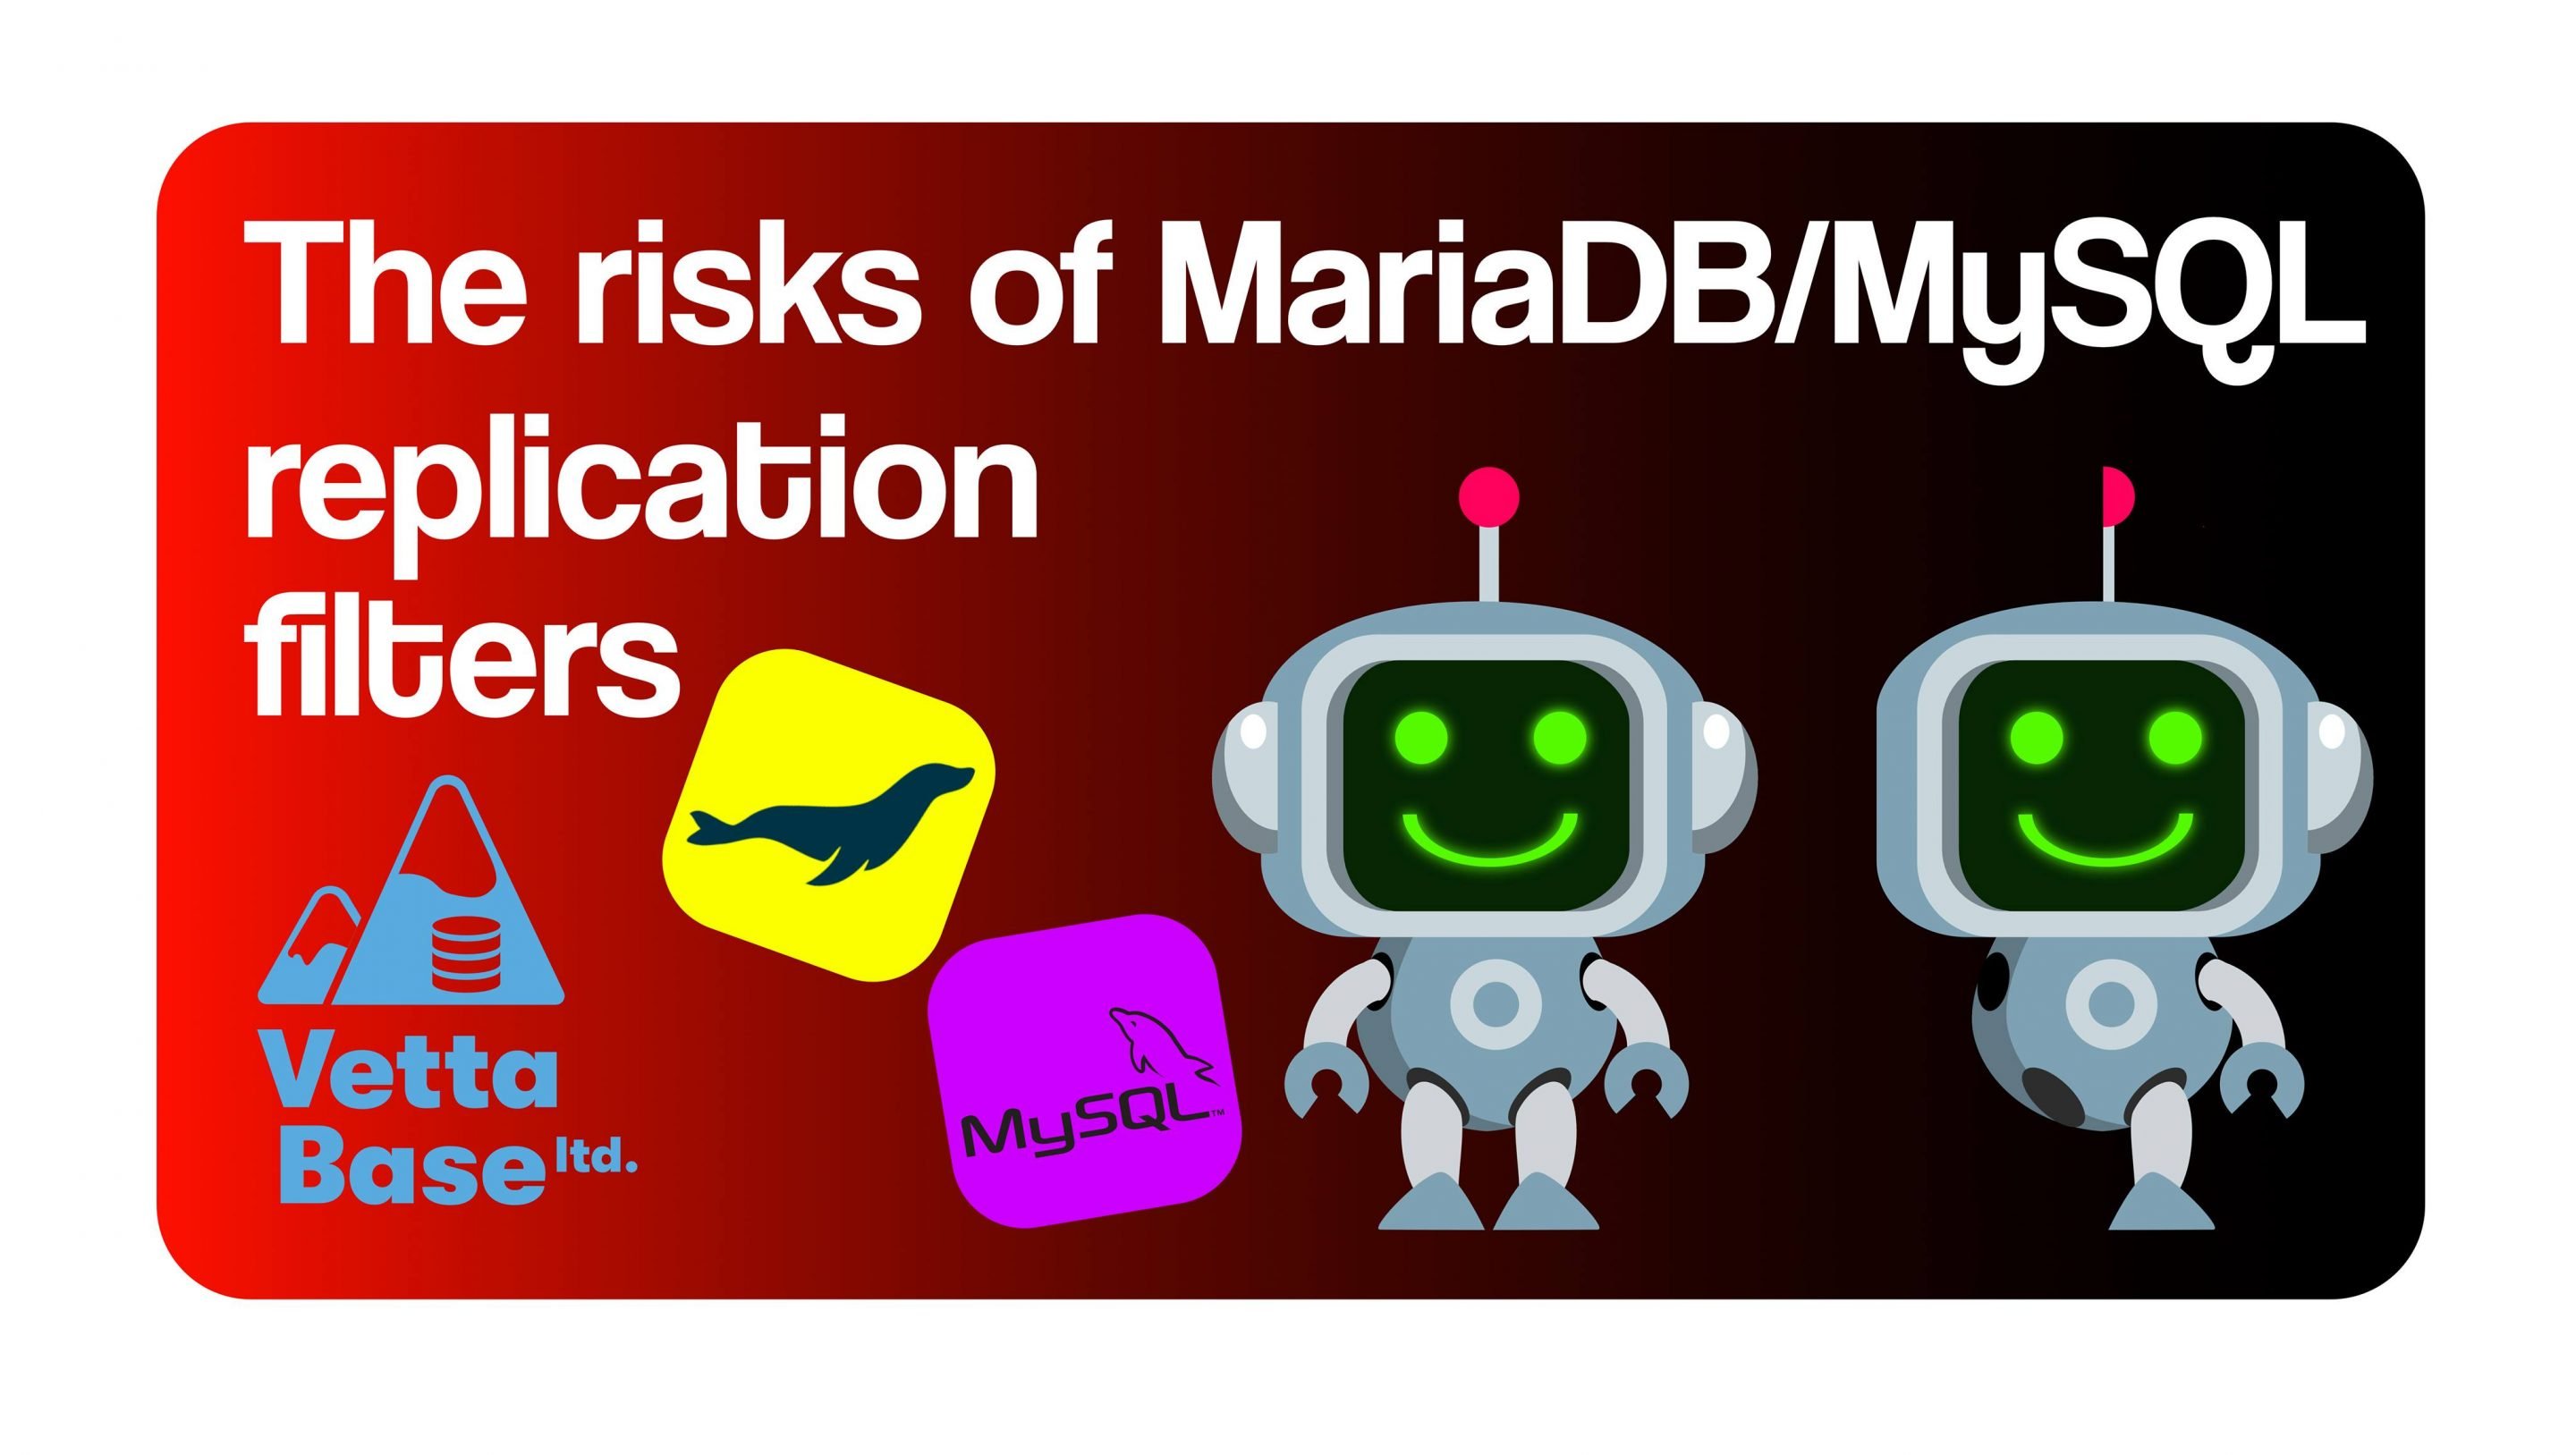 The risks of MariaDB/MySQL replication filters